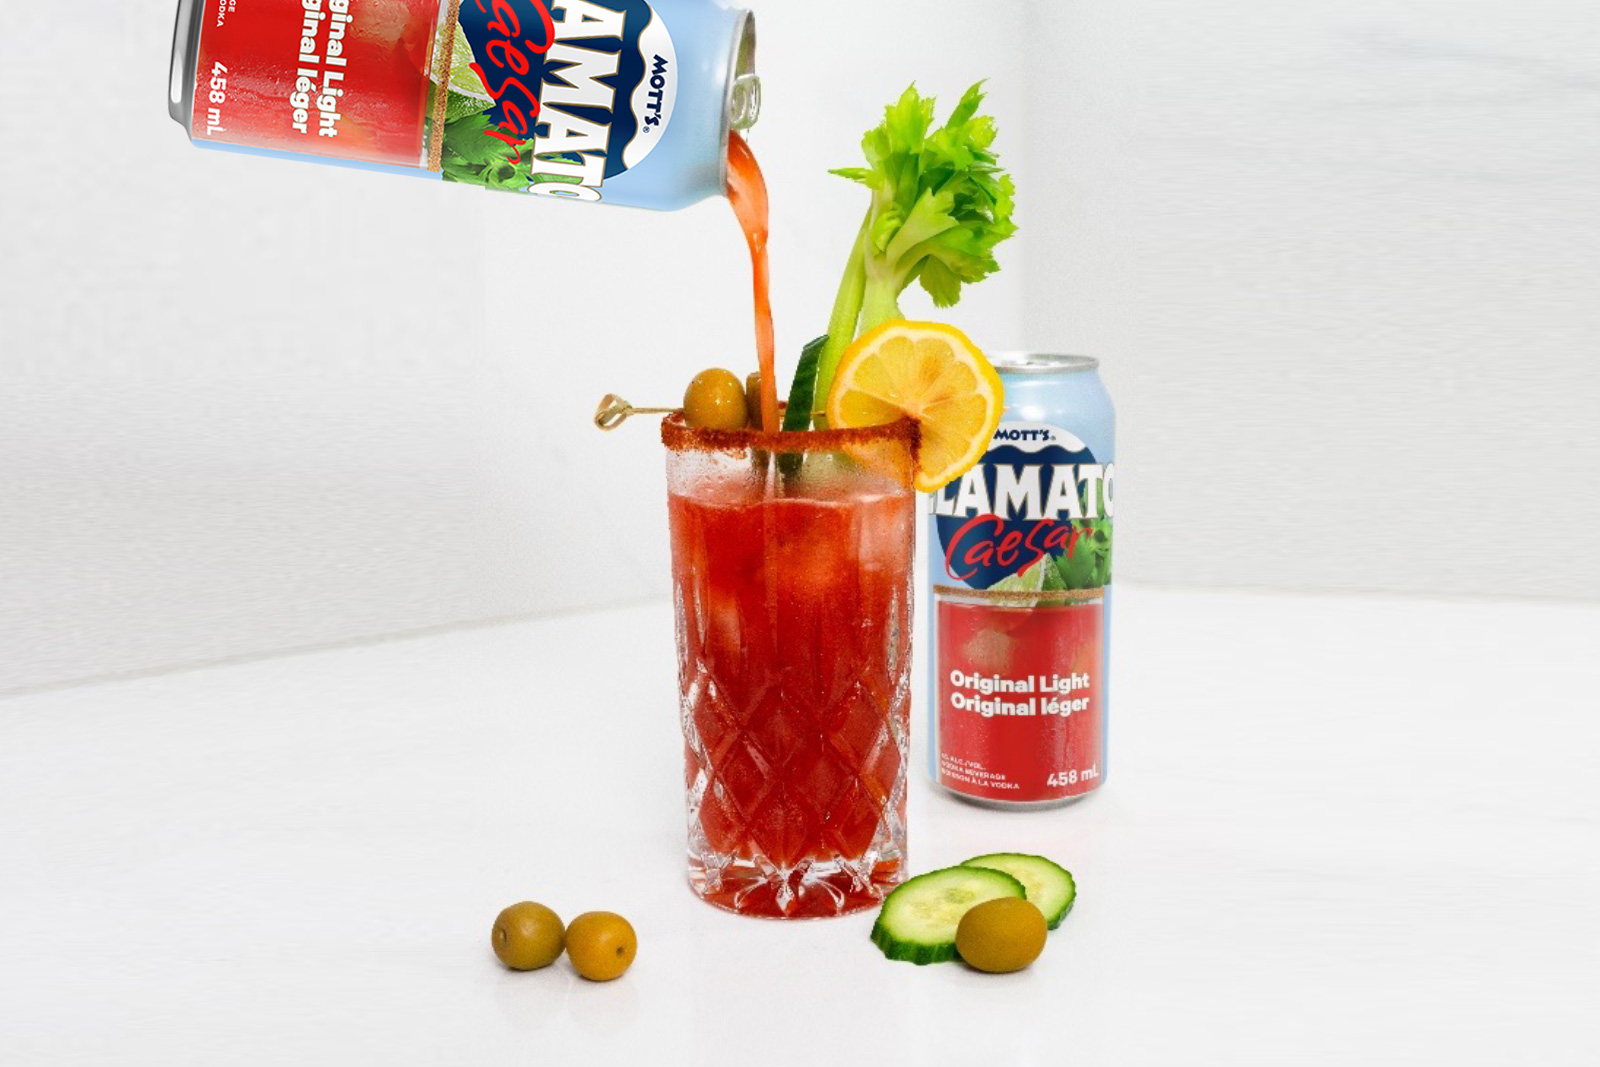 Caesar prêt-à-boire Original léger￼